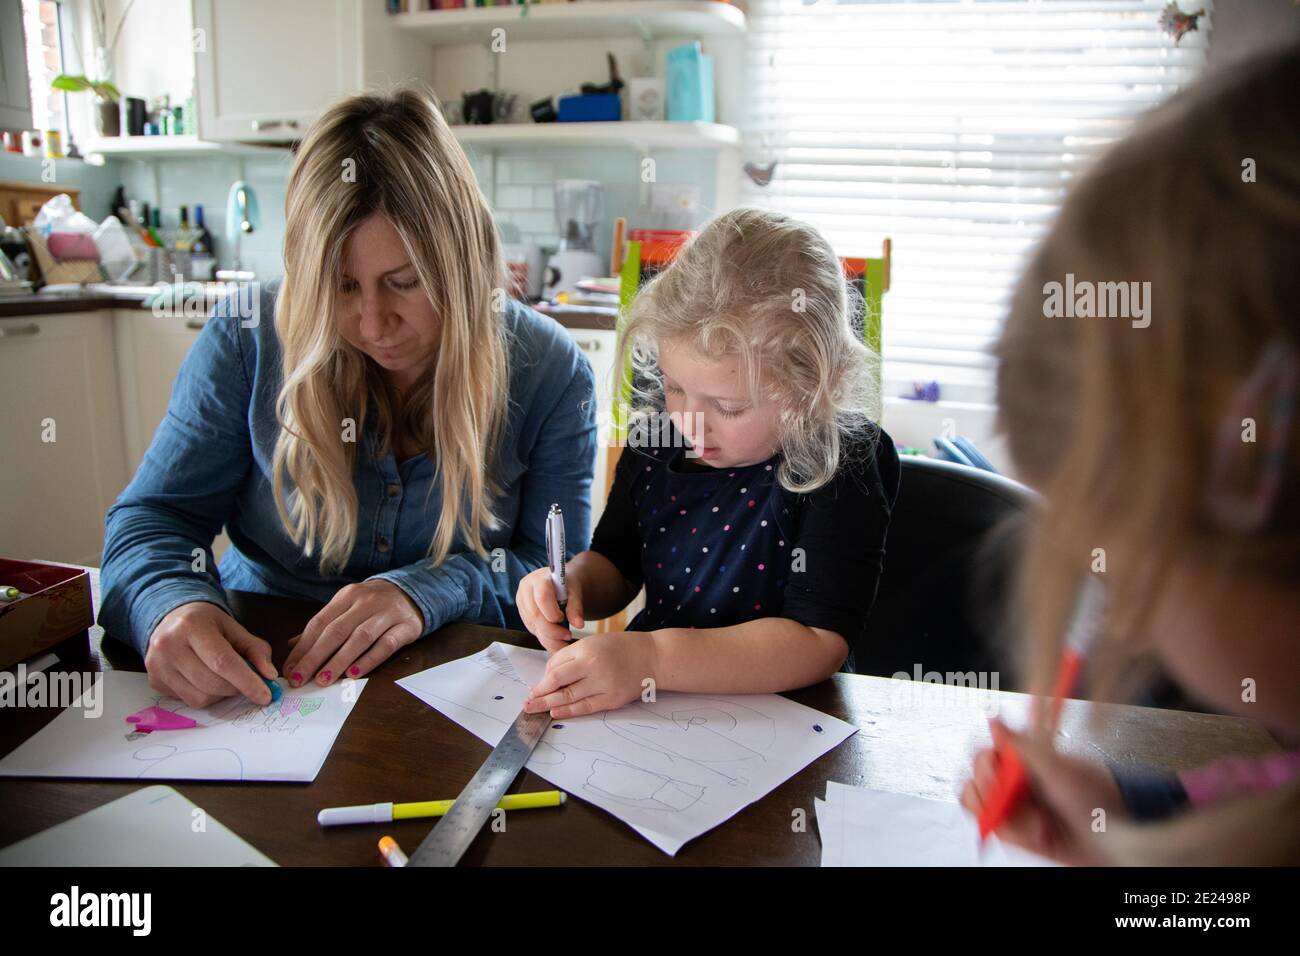 Ein dreijähriges Kind und ihre Mutter, die während der Covid-Pandemie gemeinsam Schularbeiten machen, zu Hause in der Küche Stockfoto